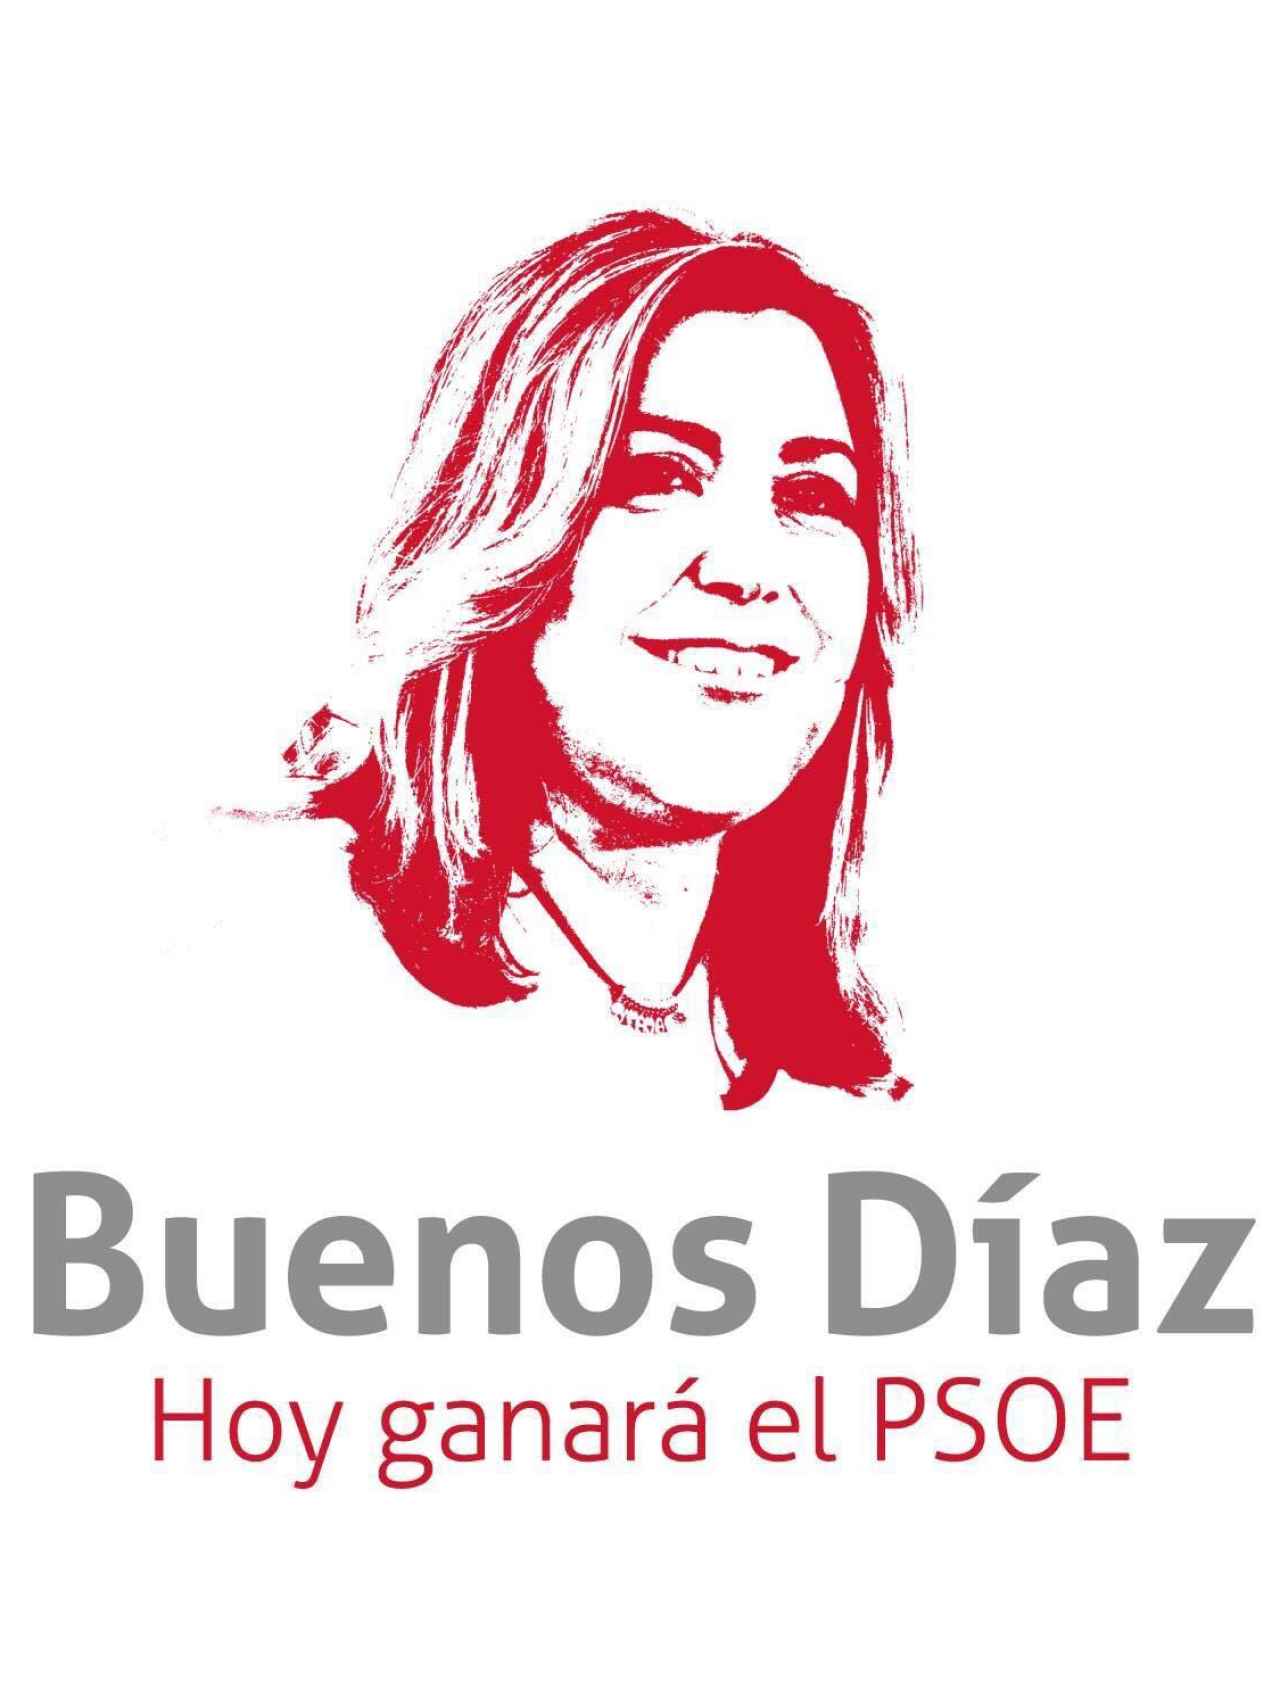 Imagen distribuida entre partidarios de Susana Díaz.